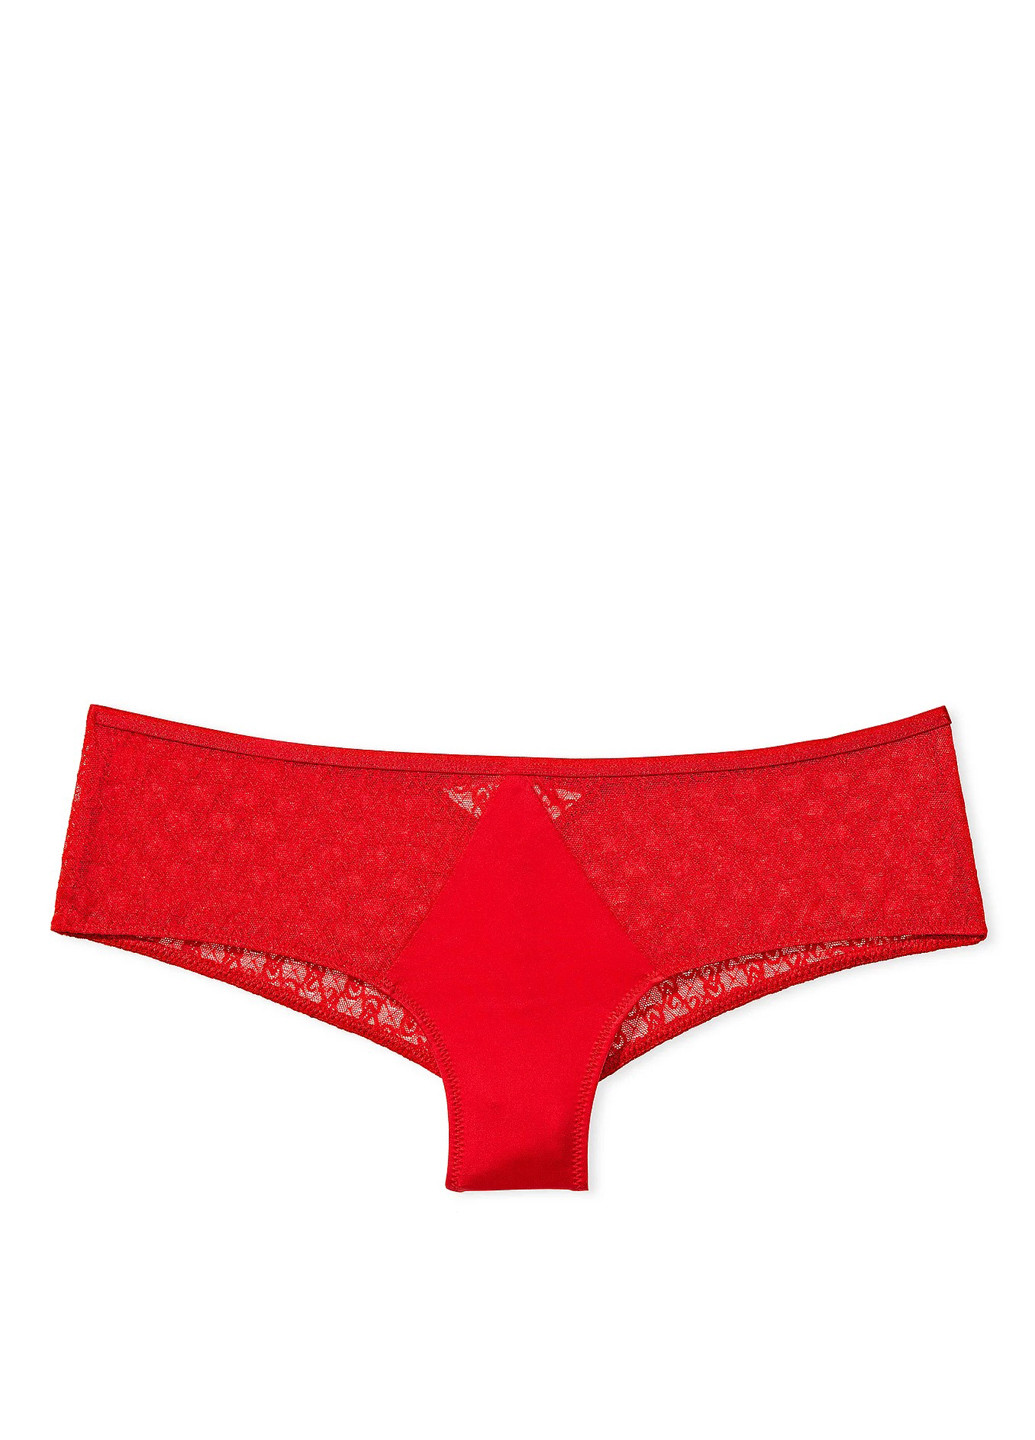 Червоний демісезонний комплект (бюстгальтер, тусики) Victoria's Secret